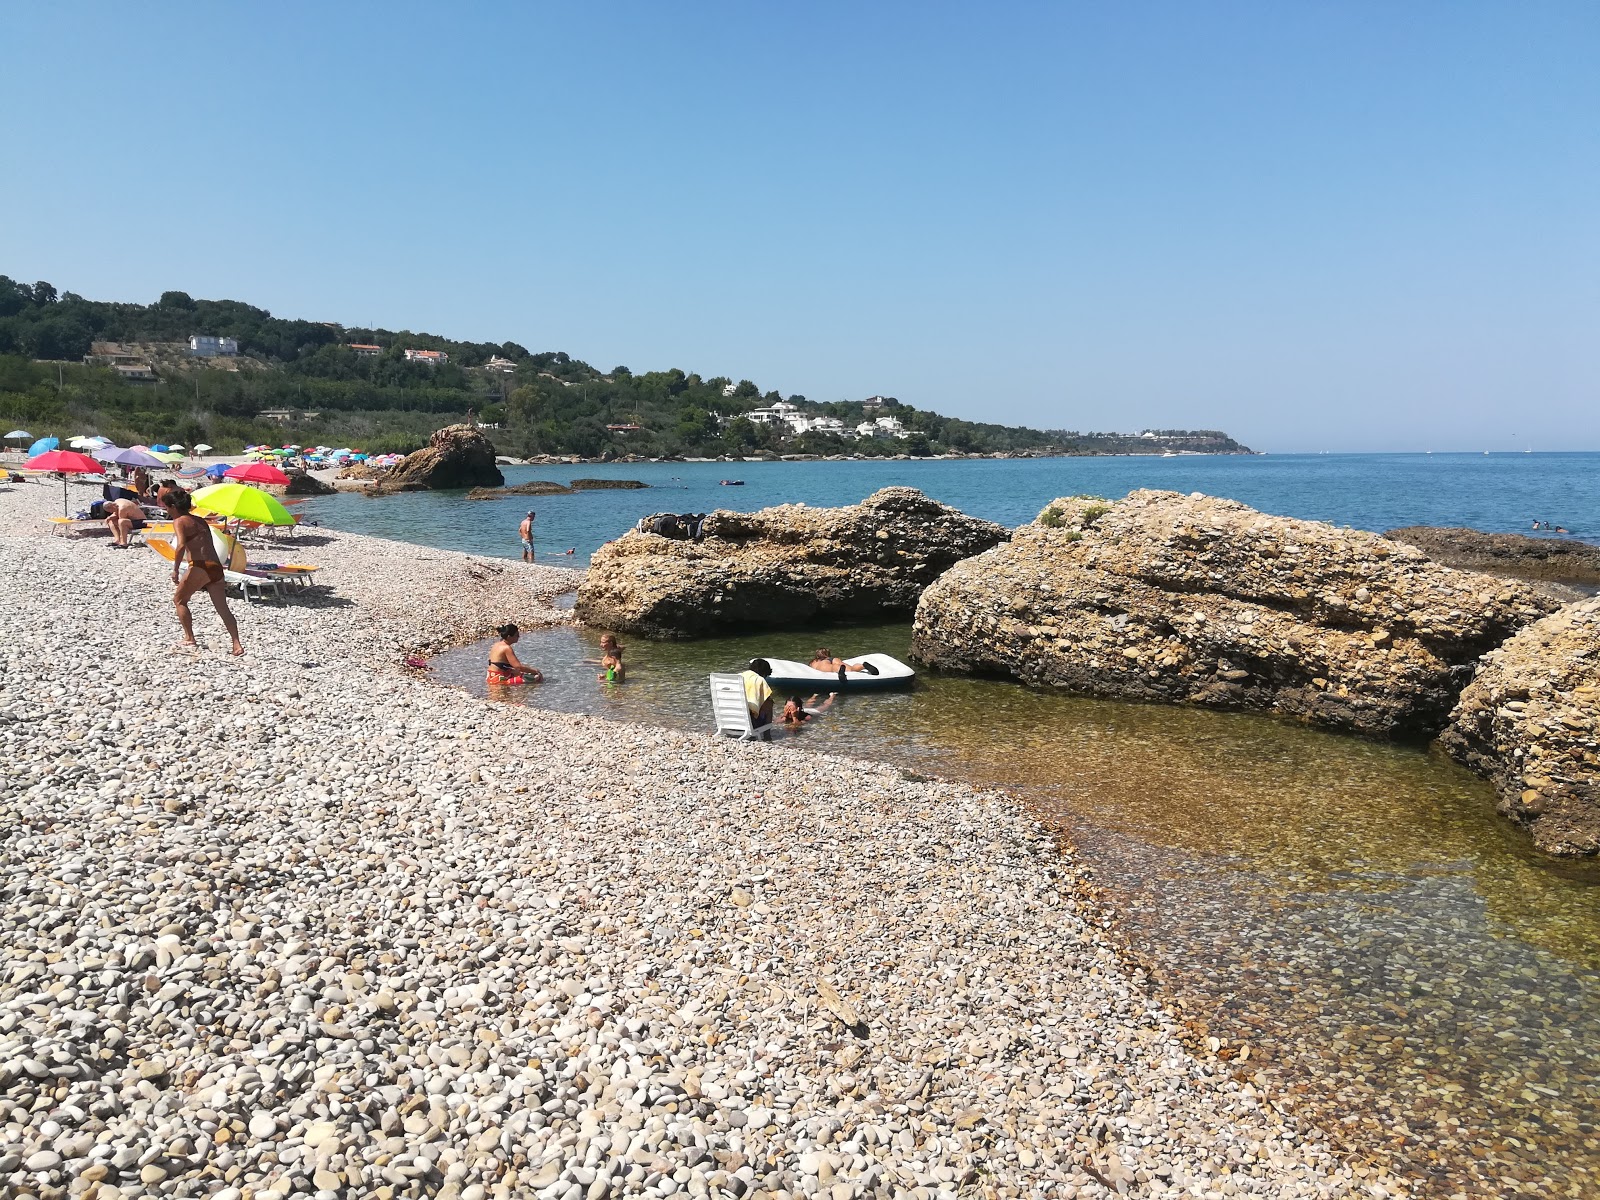 Spiaggia di San Nicola'in fotoğrafı - rahatlamayı sevenler arasında popüler bir yer